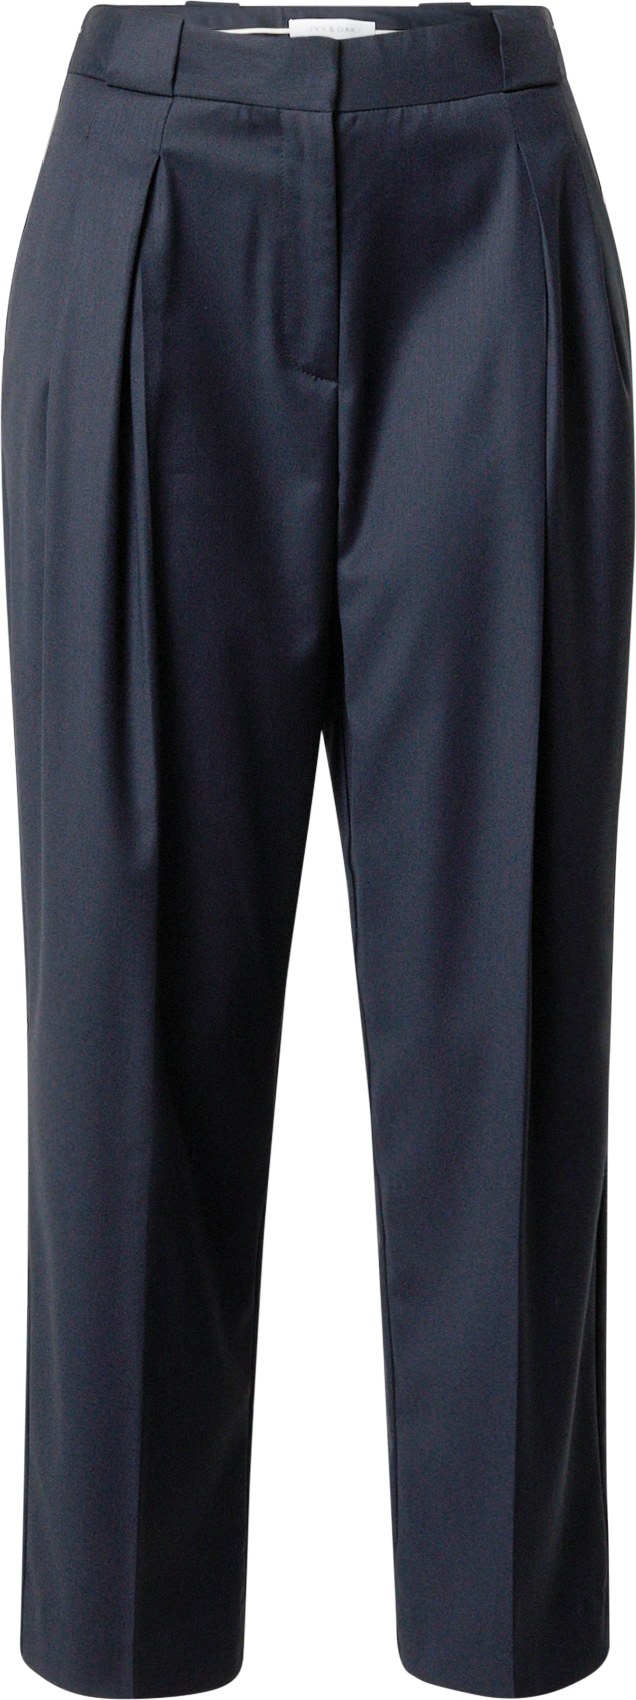 IVY & OAK Kalhoty s puky námořnická modř